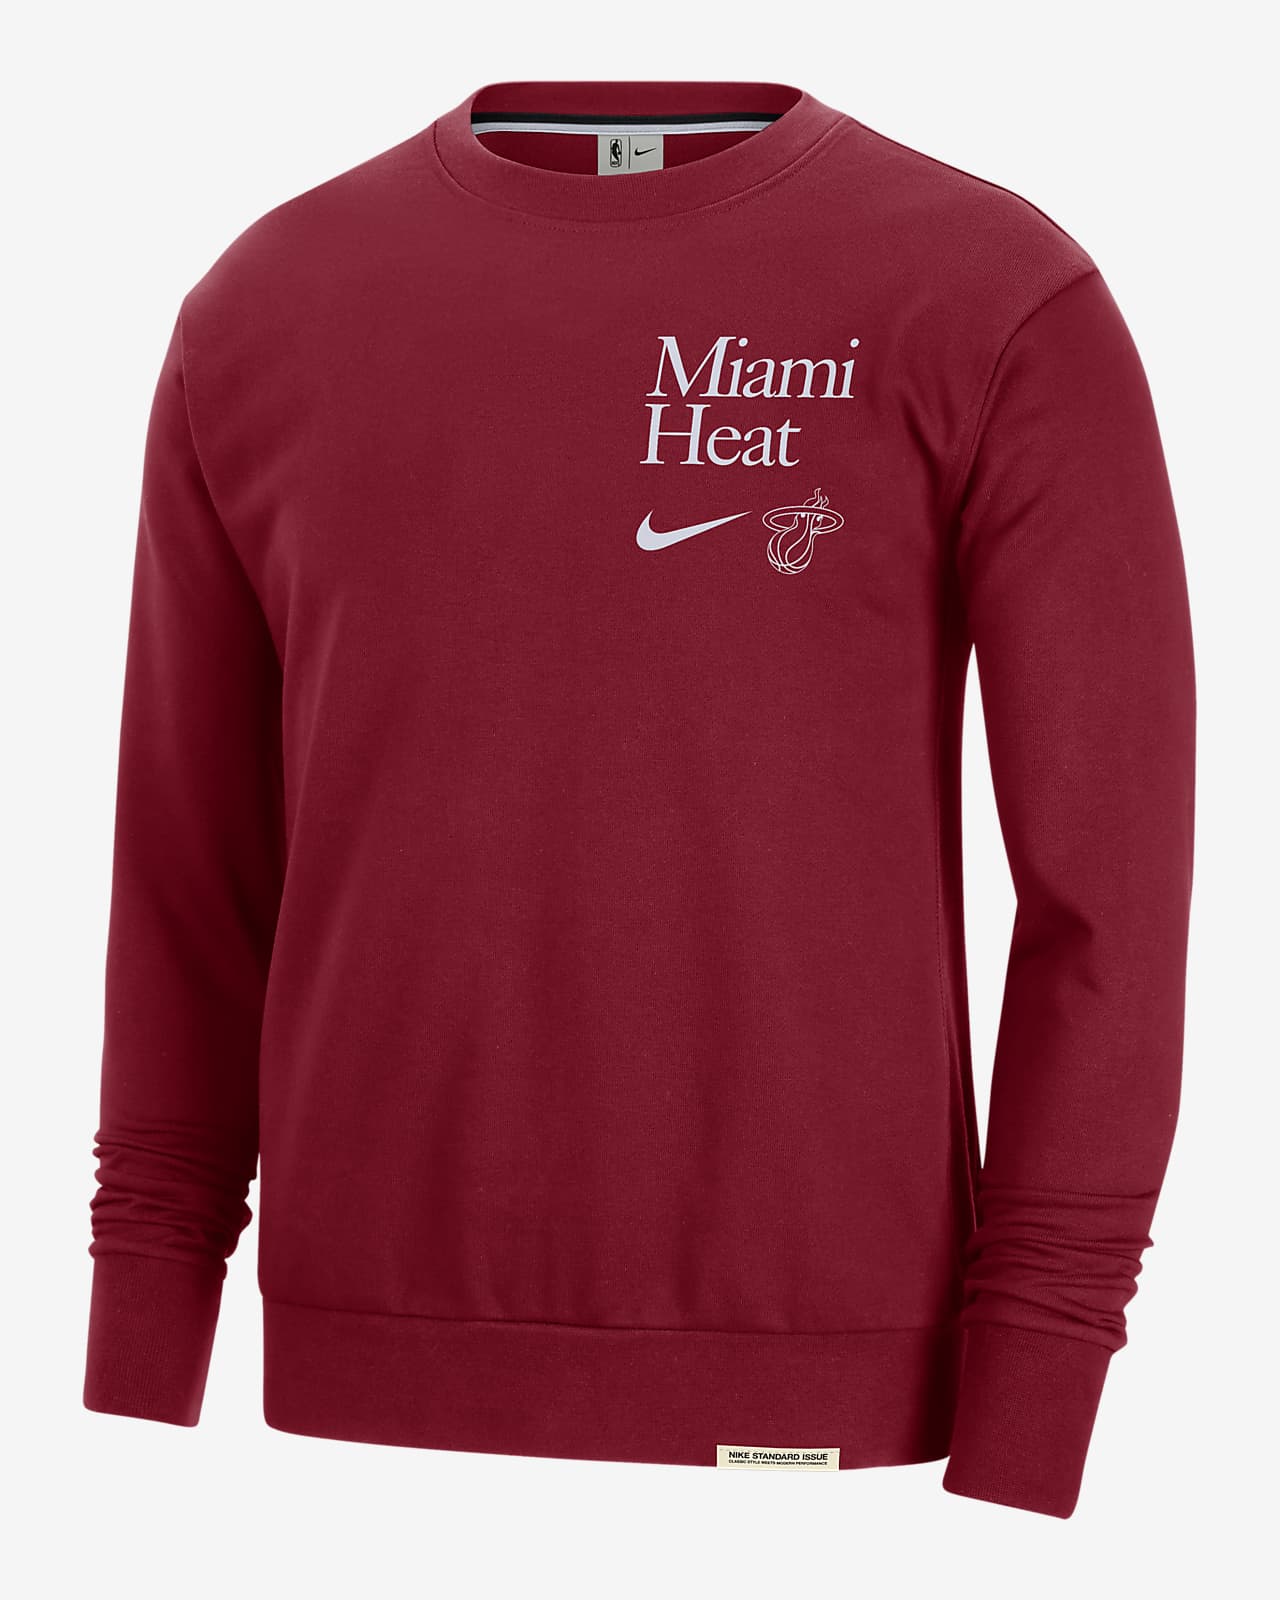 Miami Heat Standard Issue Men's Nike Dri-FIT NBA Crew-Neck Sweatshirt